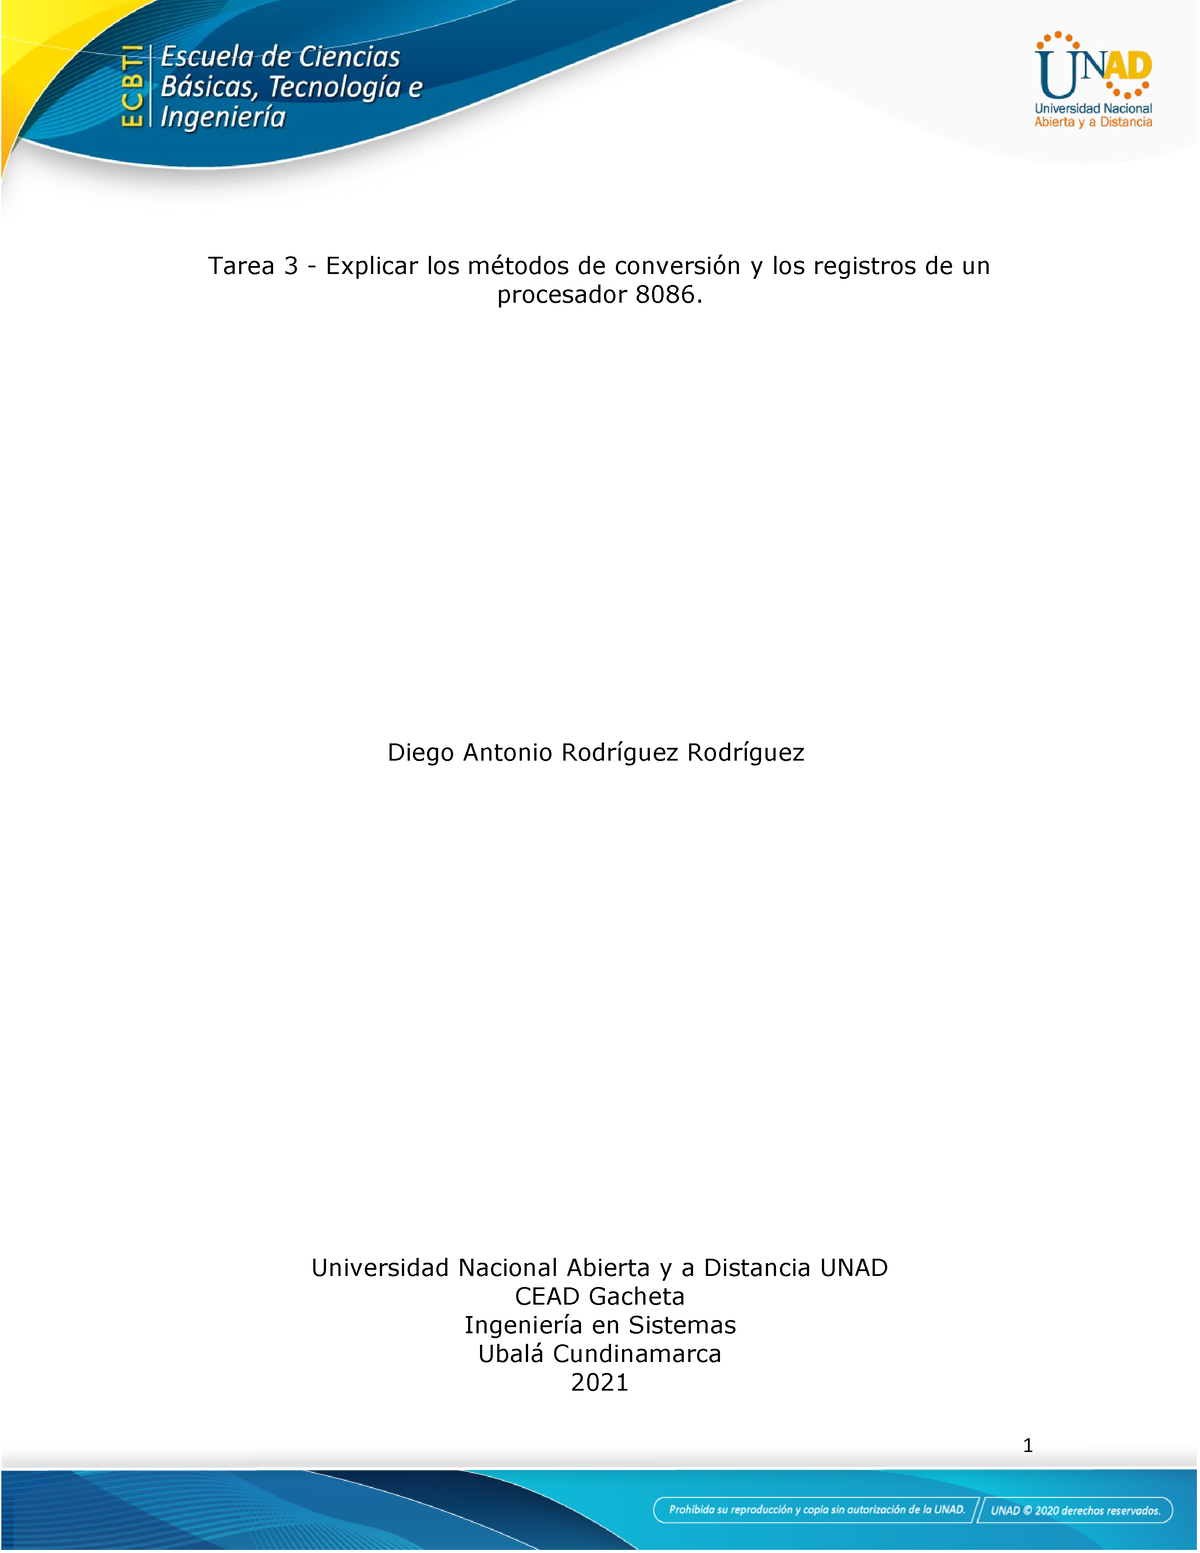 Diego Rodriguez - Unad - Tarea 3 - Explicar los métodos de conversión y ...